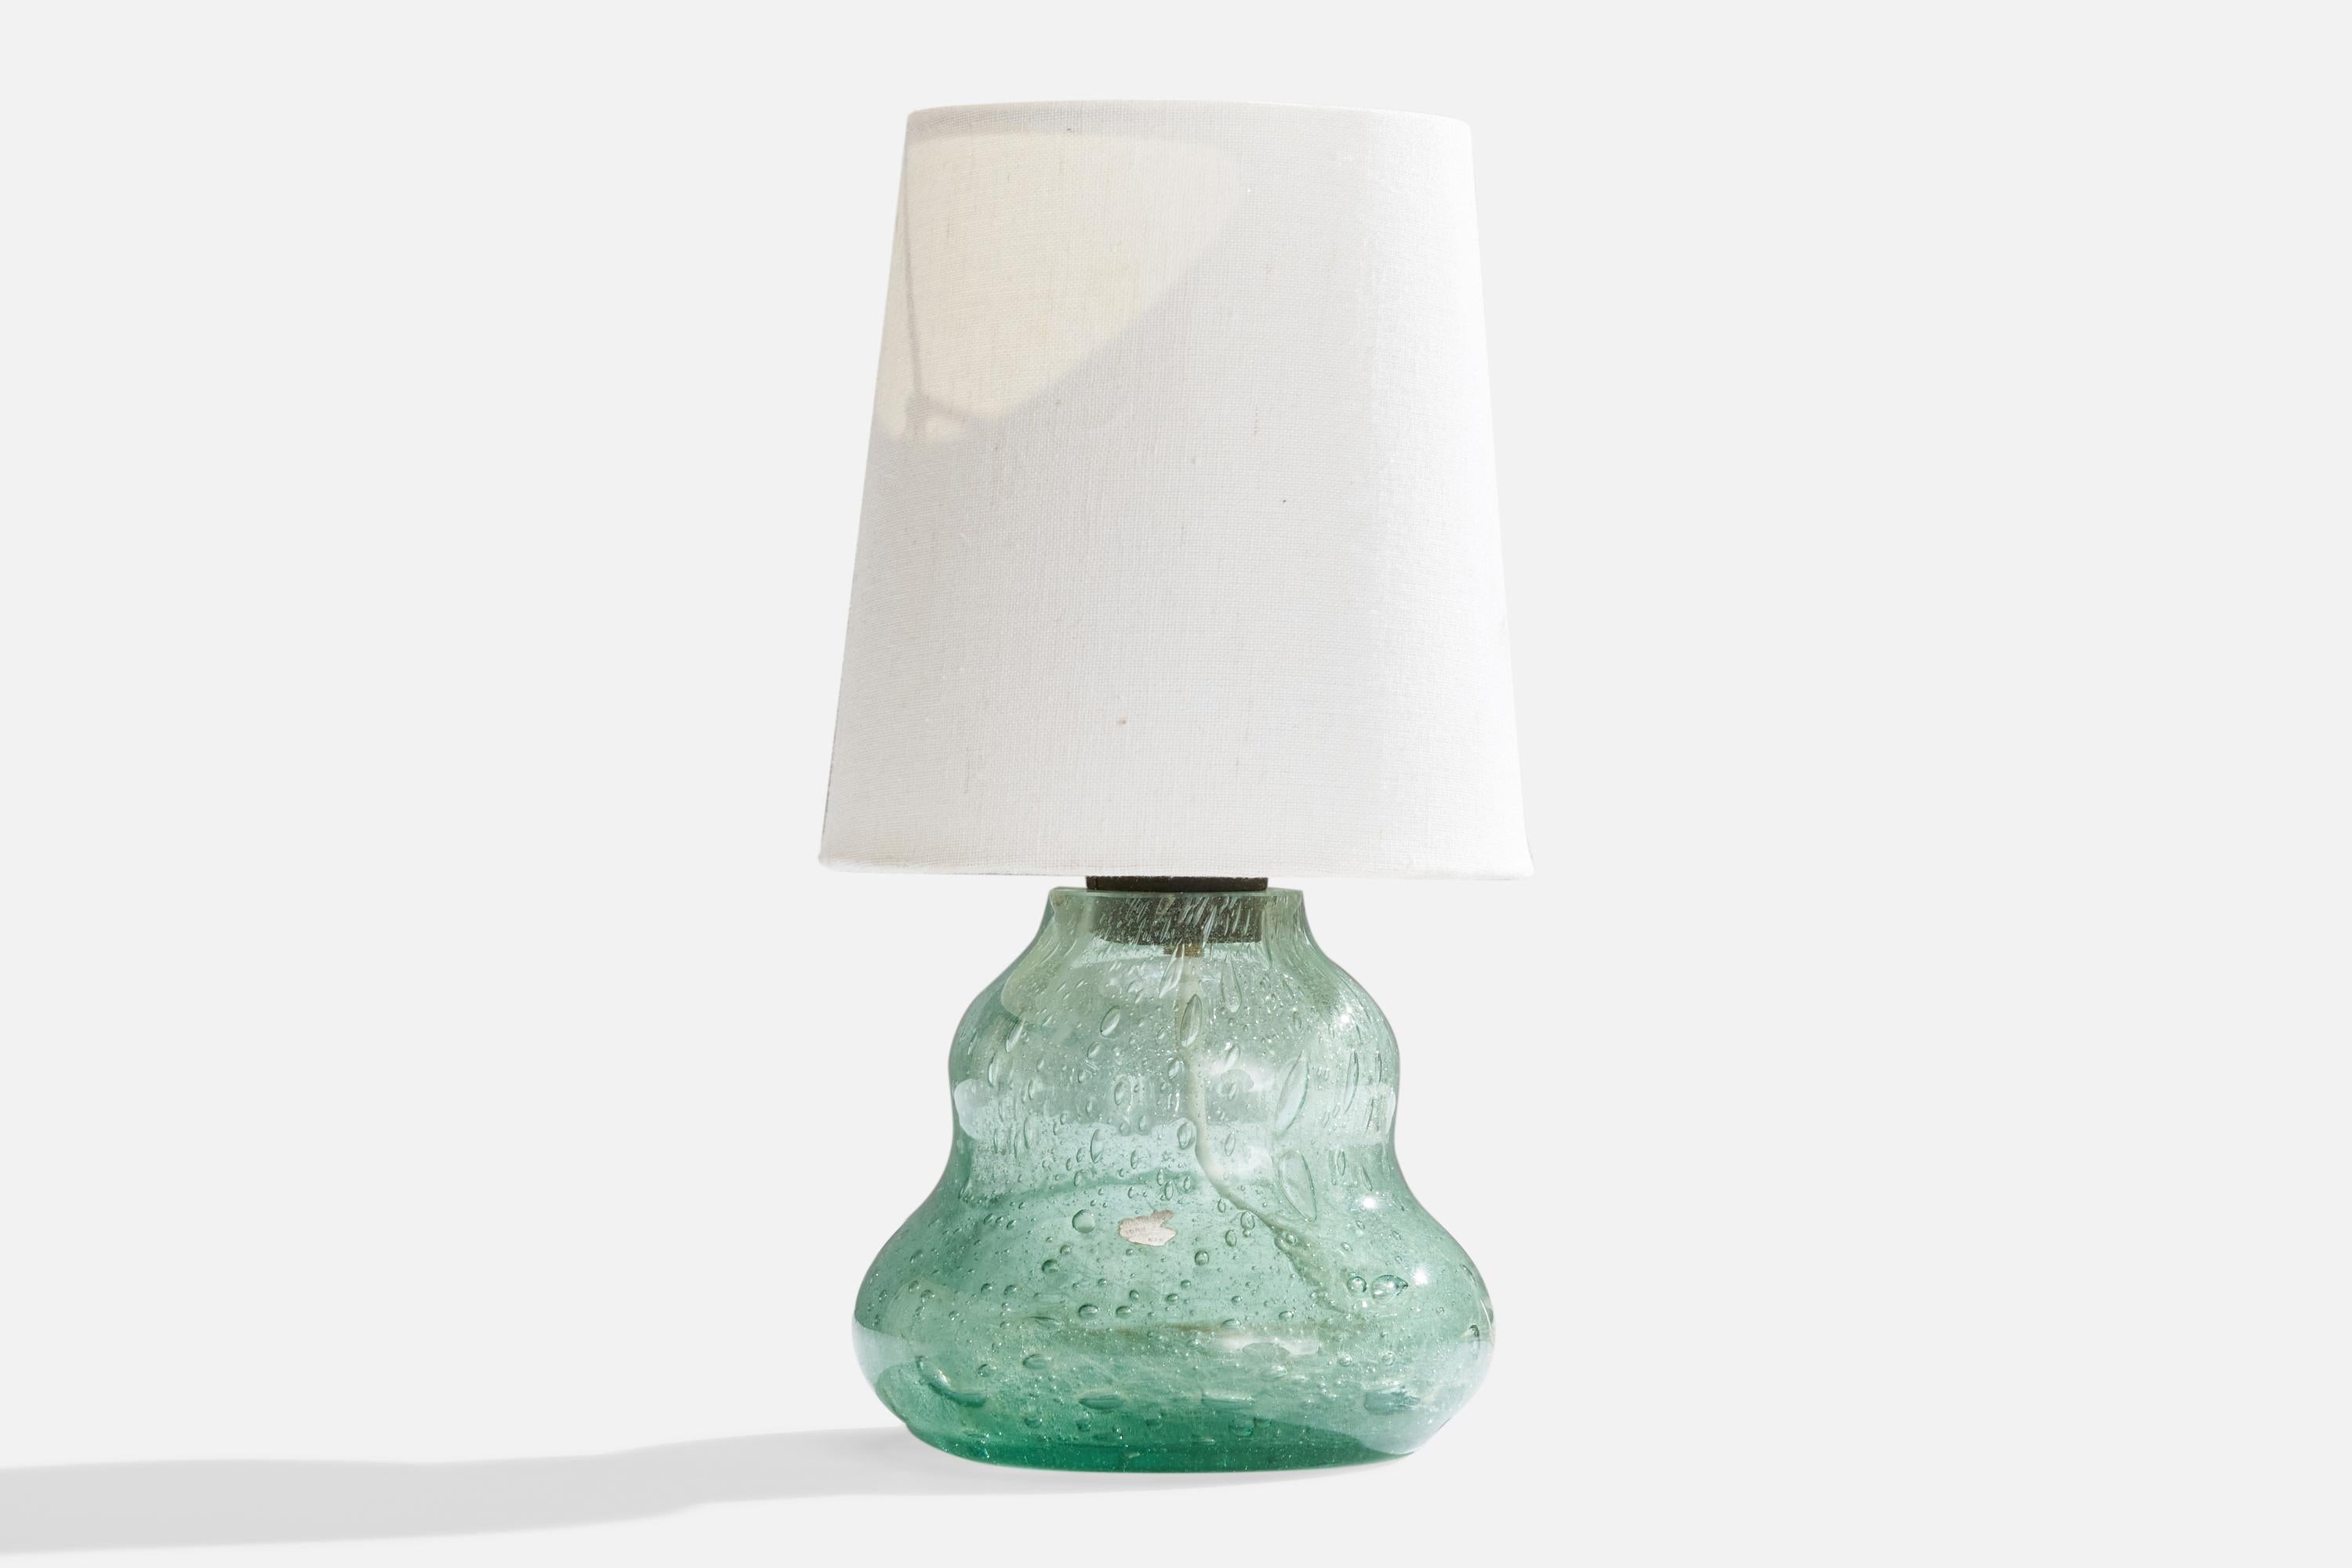 Tischlampe aus geblasenem Glas und weißem Stoff, entworfen von Ture Berglund und hergestellt von Skansen, Glass, Schweden, um 1940.

Gesamtabmessungen (Zoll): 11,5